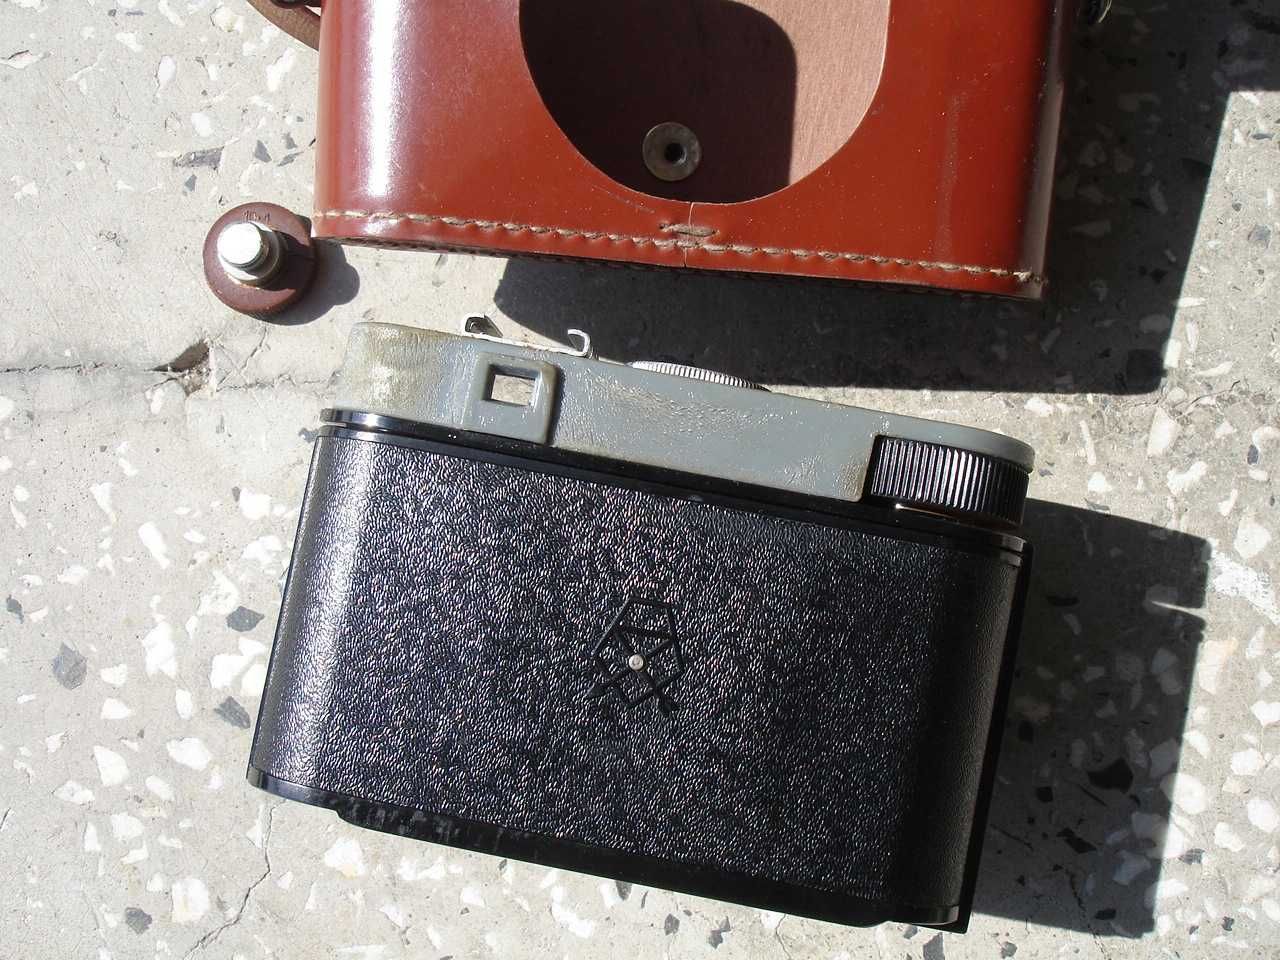 Смена 6 - класически руски фотоапарат, произведен в СССР